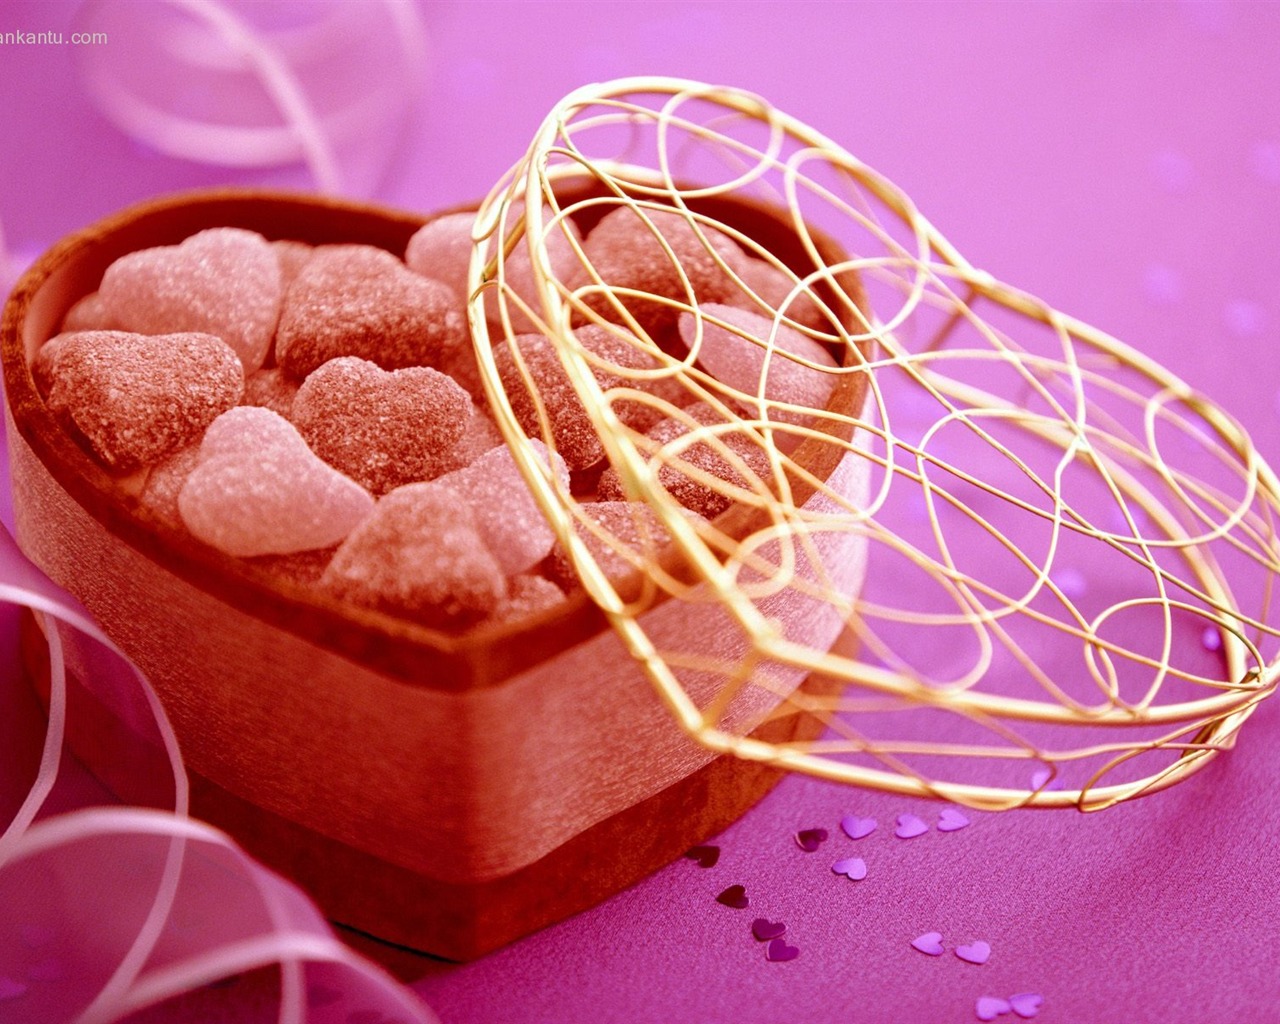 La tinta indeleble Día de San Valentín de chocolate #1 - 1280x1024